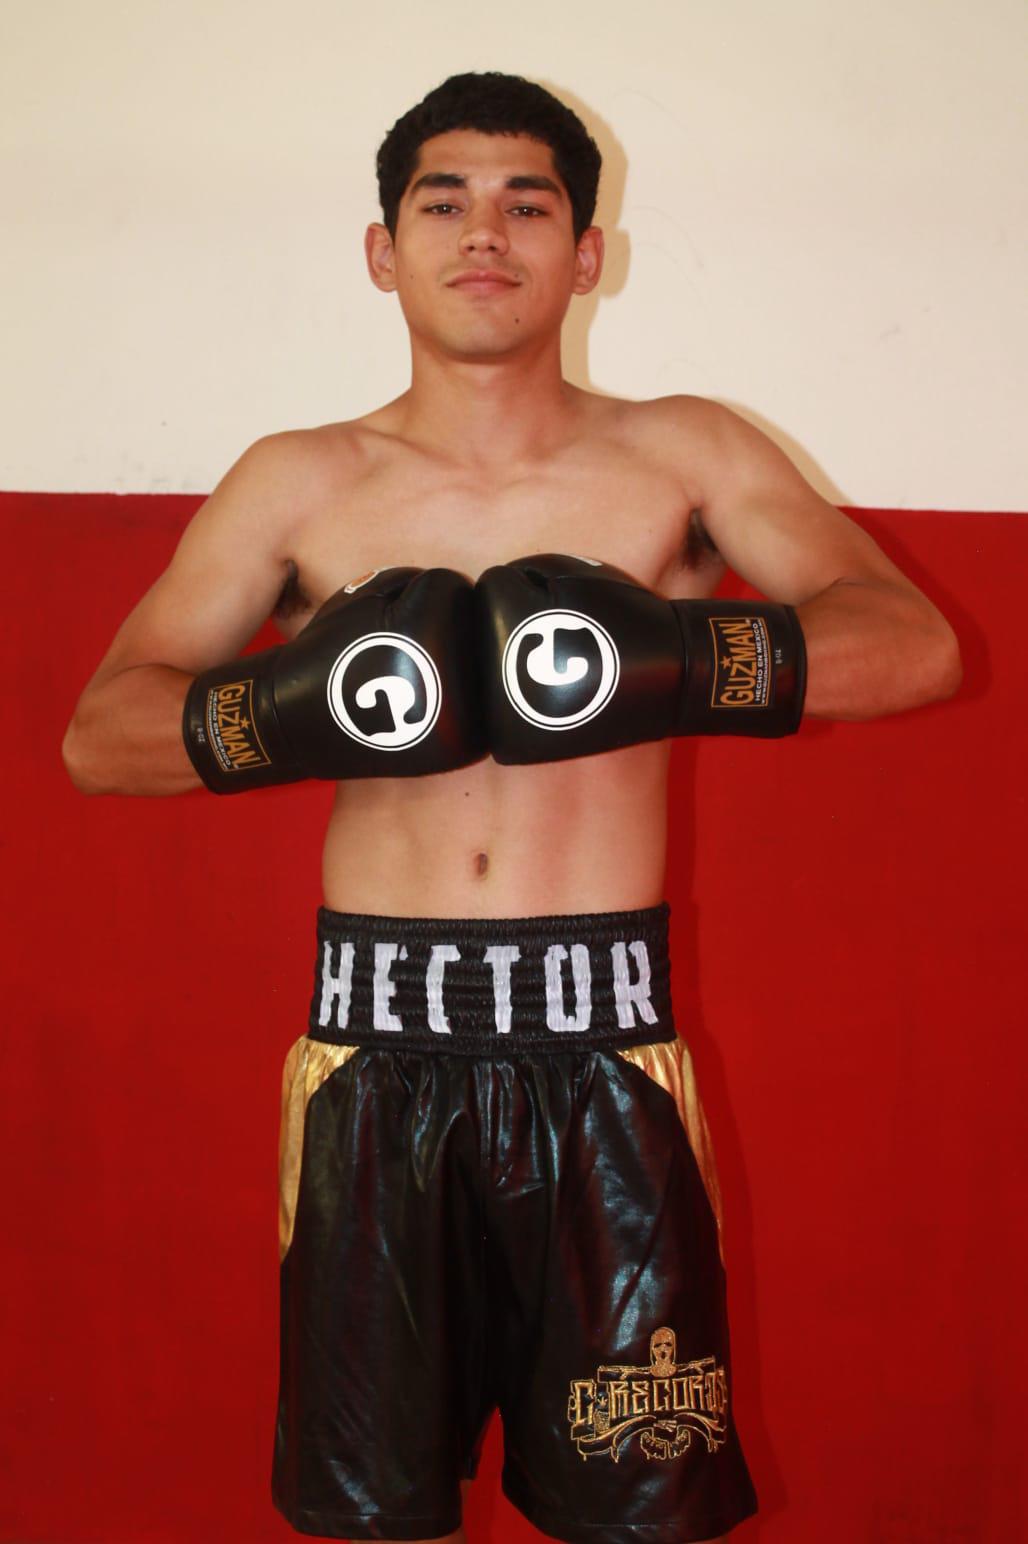 $!Además de desempeñarse como boxeador, Héctor está por terminar una licenciatura en Administración de empresas y trabaja como auxiliar de ventas.